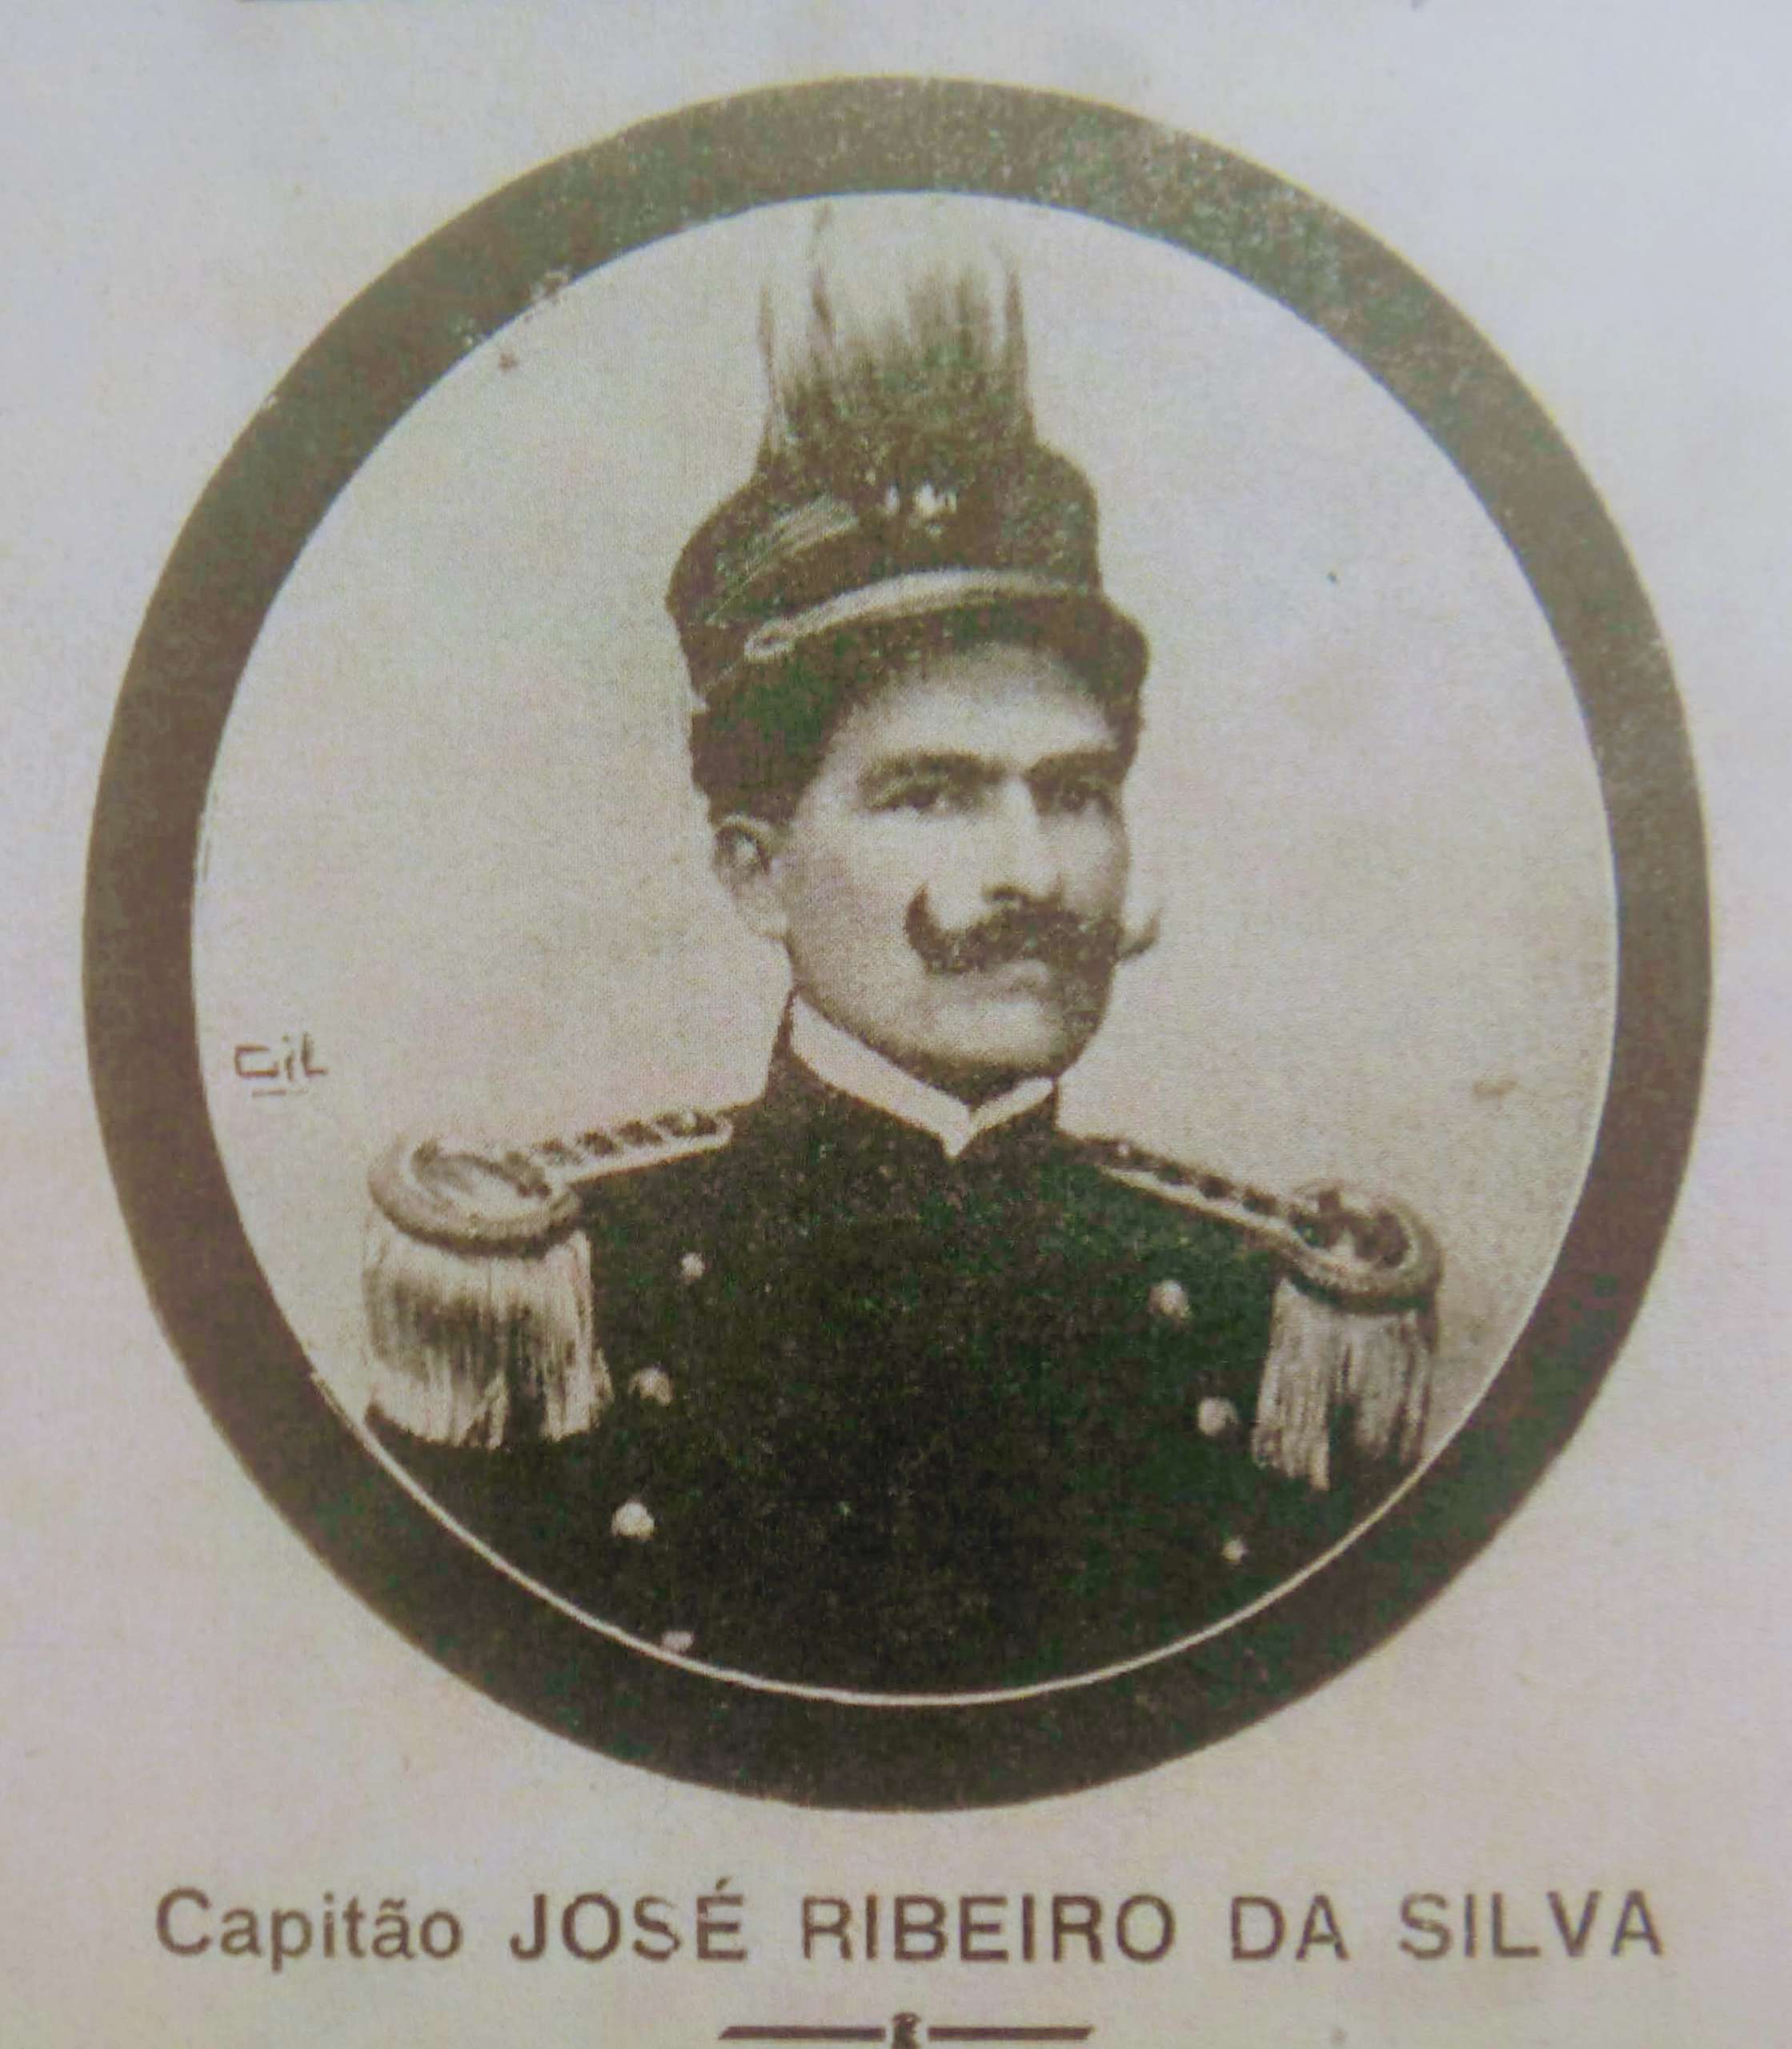 O Capitão José Ribeiro da Silva era uma personalidade no cenário político da Villa de Coary a época, estava a bordo do Paes de Carvalho, mas não conseguiu sobrevier.